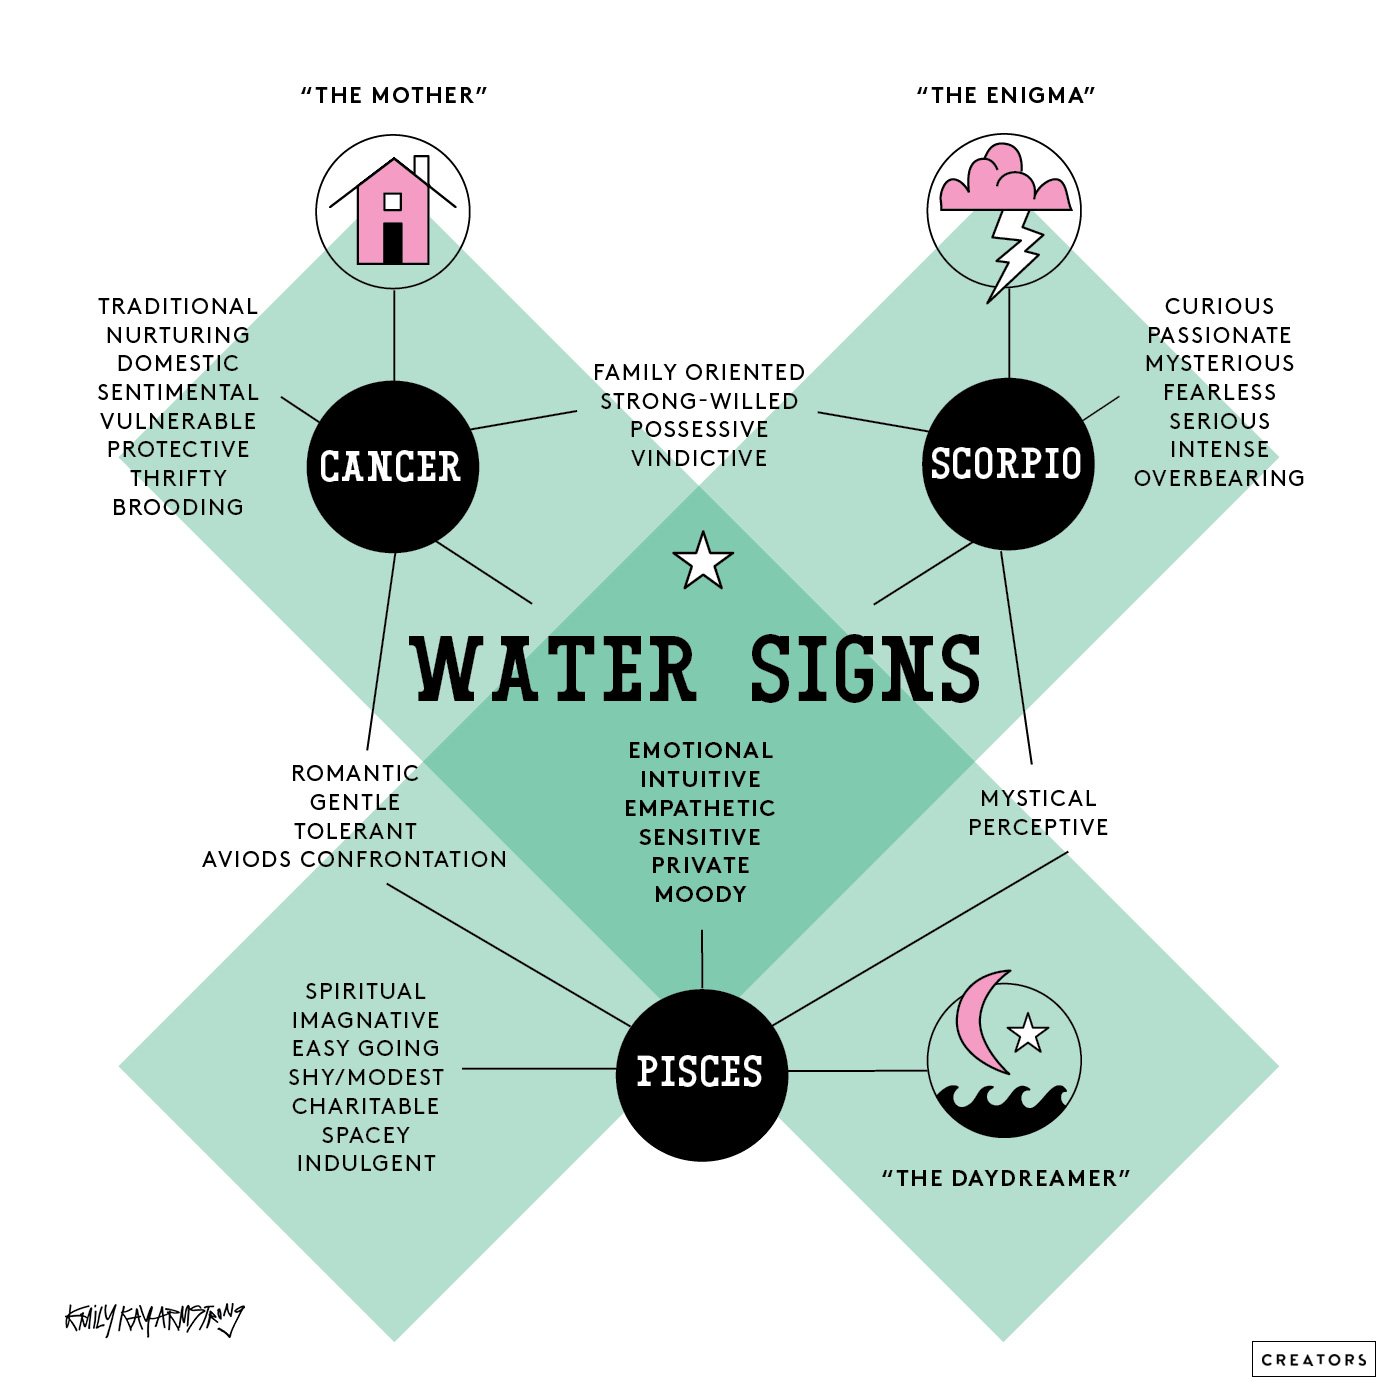 Quels zodiaques sont des signes d'eau?